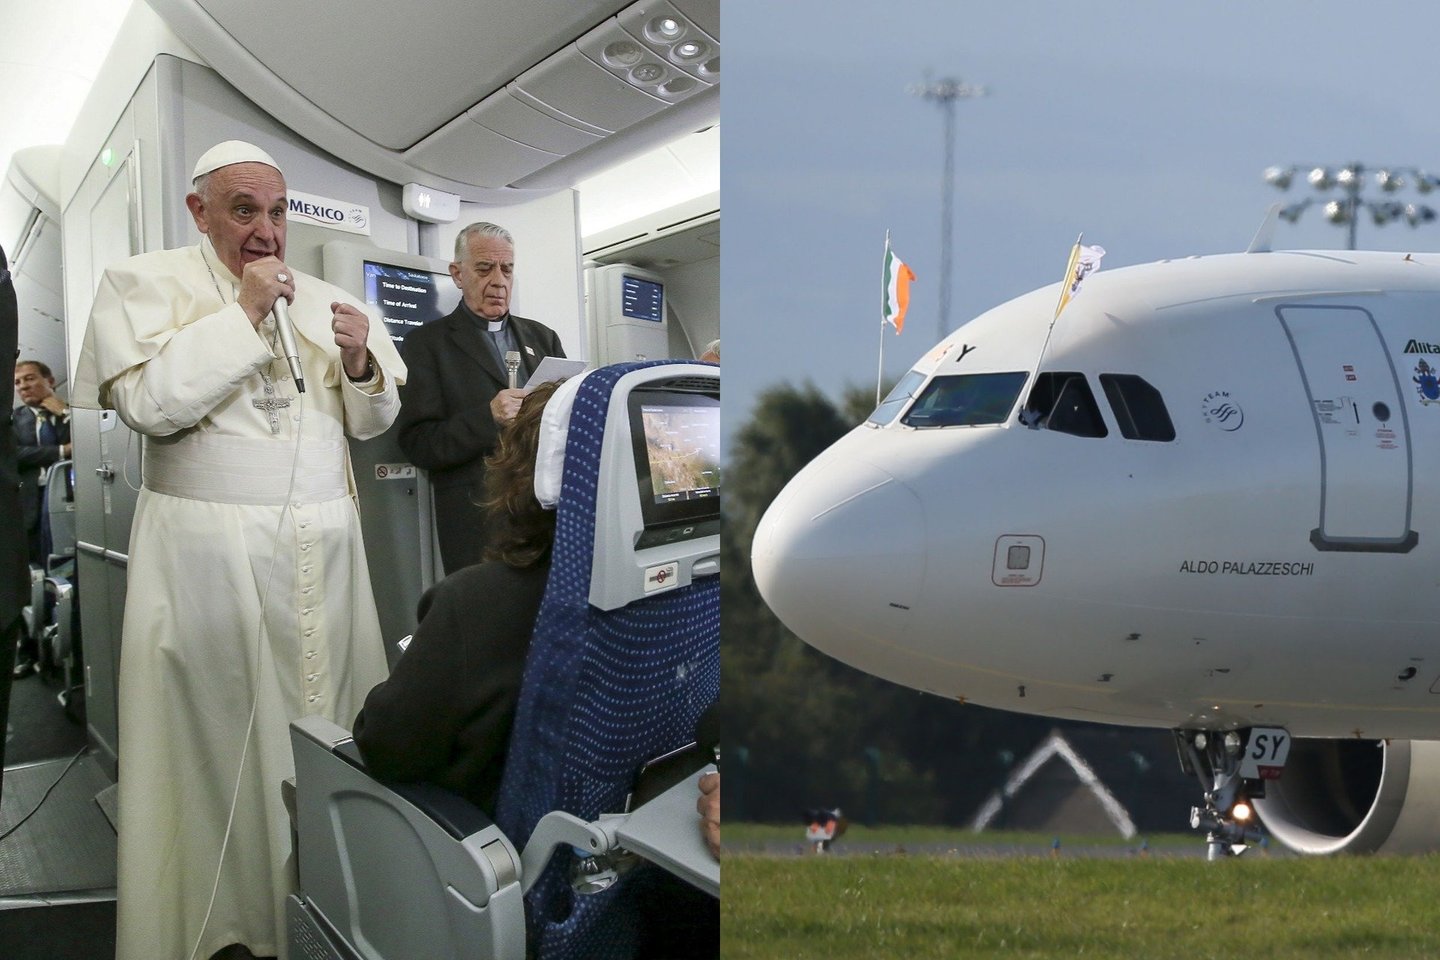  Popiežius Pranciškus į užsienio šalis atvyksta oro linijų Alitalia lėktuvu, o išvyksta vietos oro bendrovės, jeigu tokia yra, skrydžiu. <br> Reuters/Scanpix nuotr. 